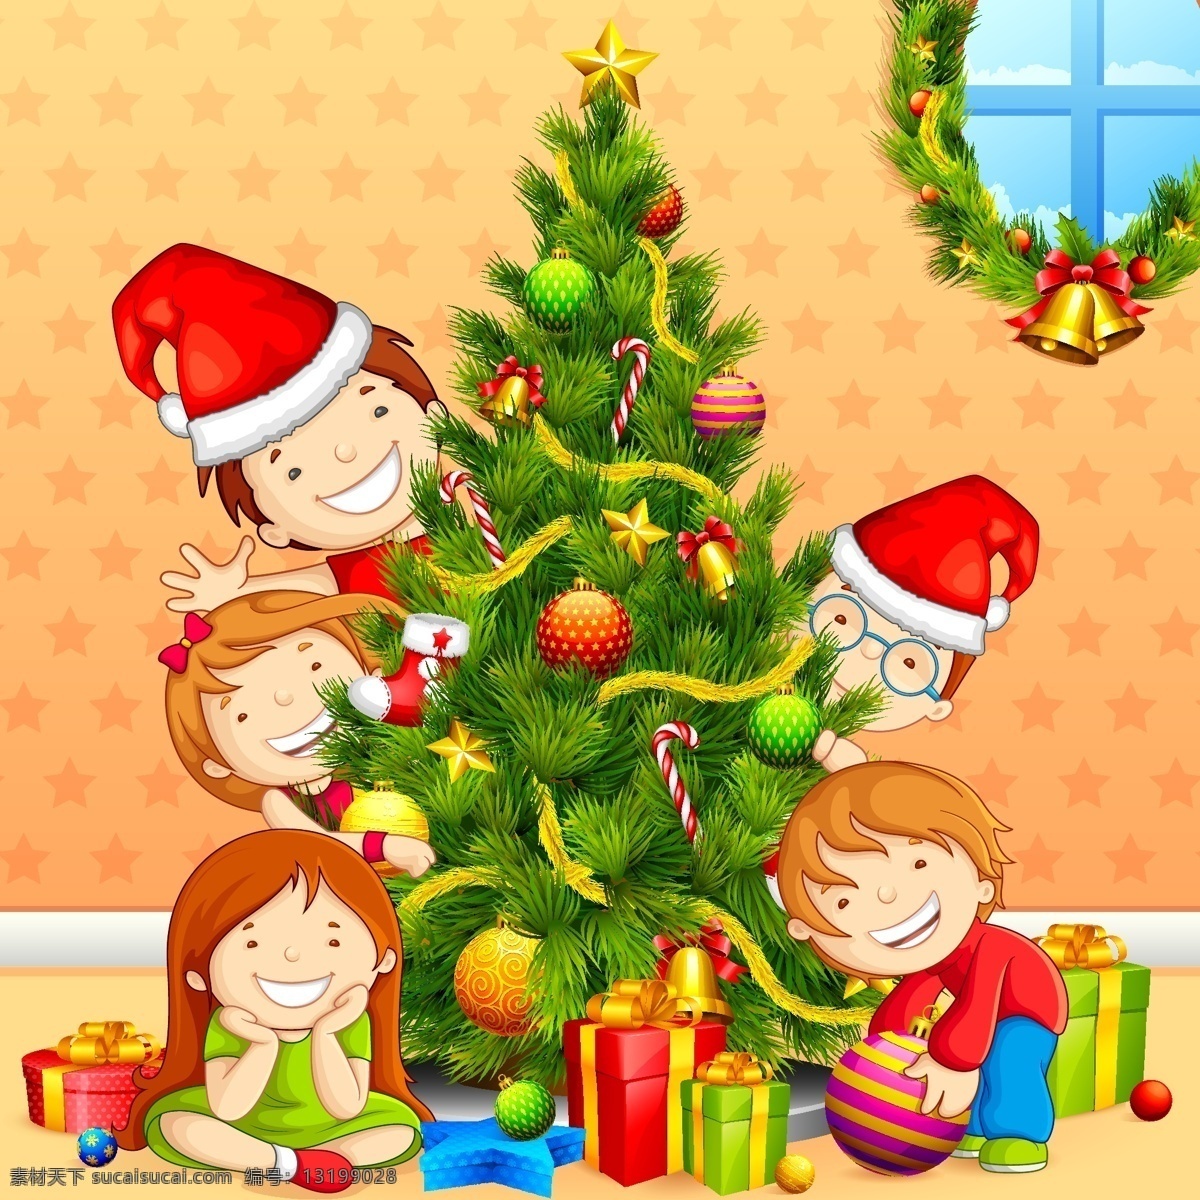 圣诞树 圣诞 帽 卡通 儿童 矢量 节日 欢乐 卡通儿童 矢量素材 圣诞帽